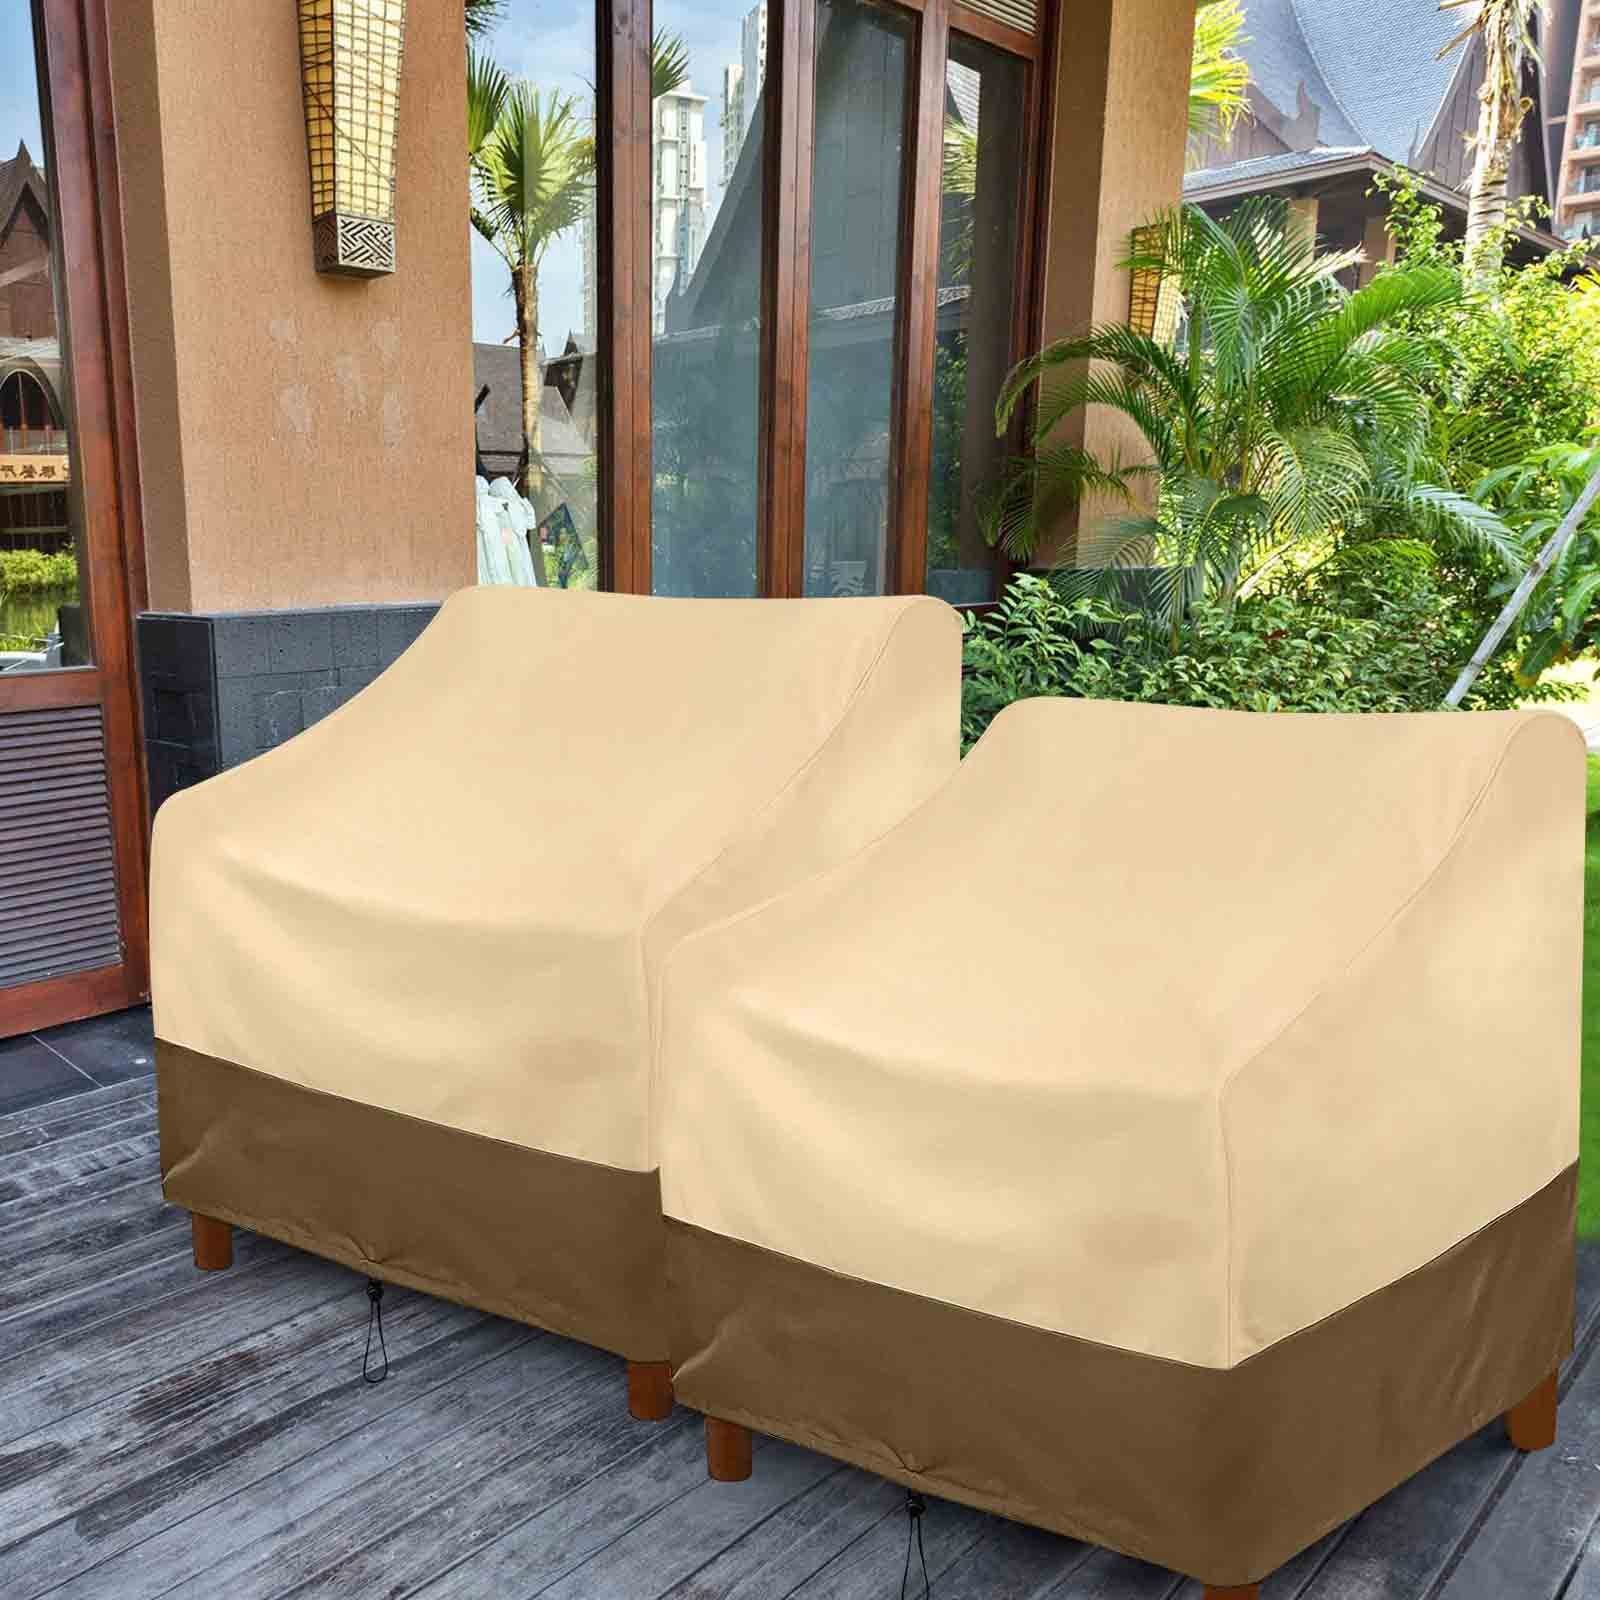 Sunicol Gartenmöbel-Schutzhülle Outdoor-Stuhl Abdeckung, wasserdicht, Anti Ultraviolet, Beige, für Terrasse Rasen Möbel deckt